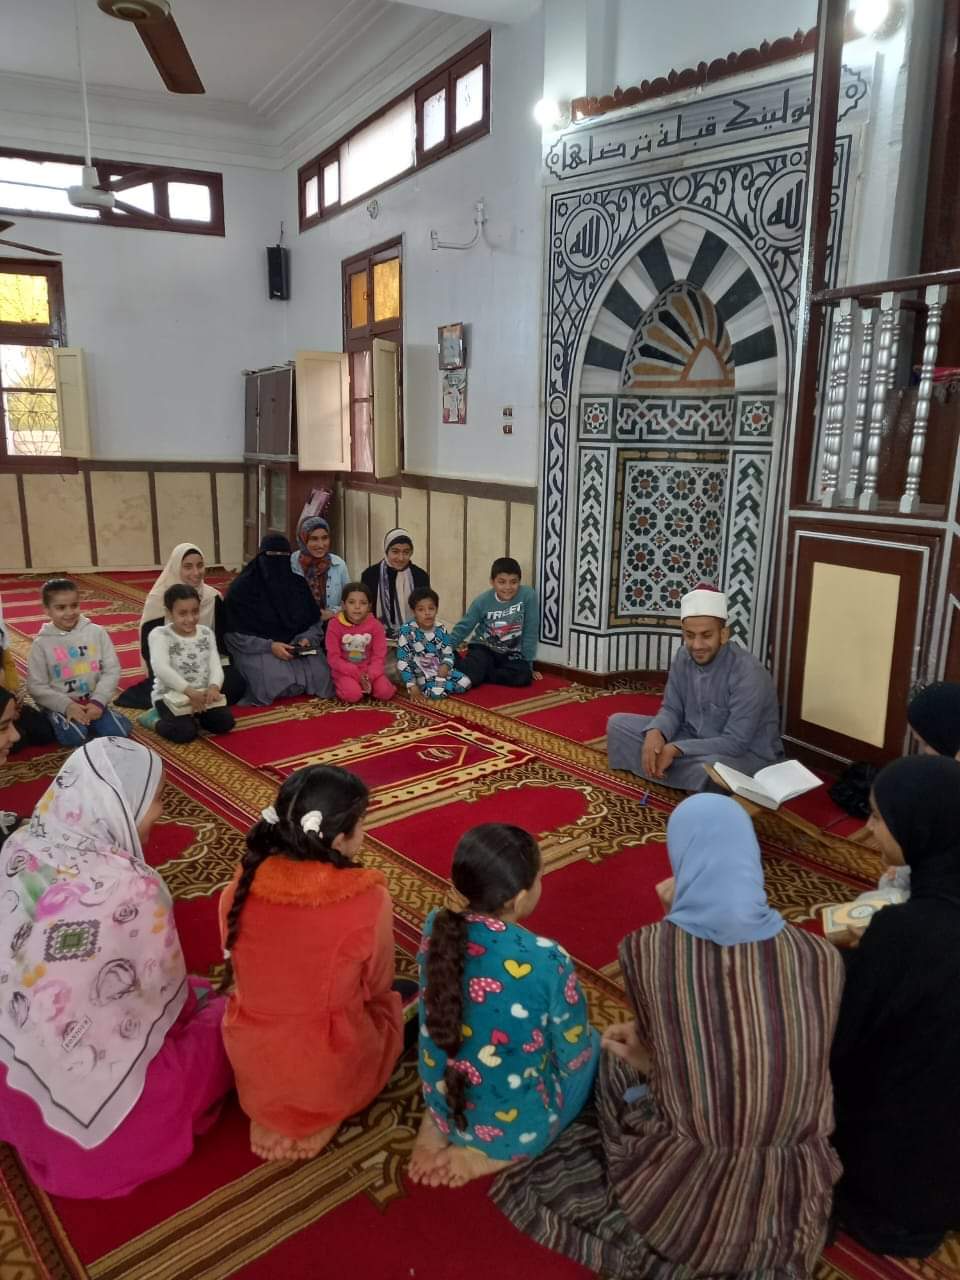  فعاليات النشاط الصيفي للطفل بالمساجد  (11)